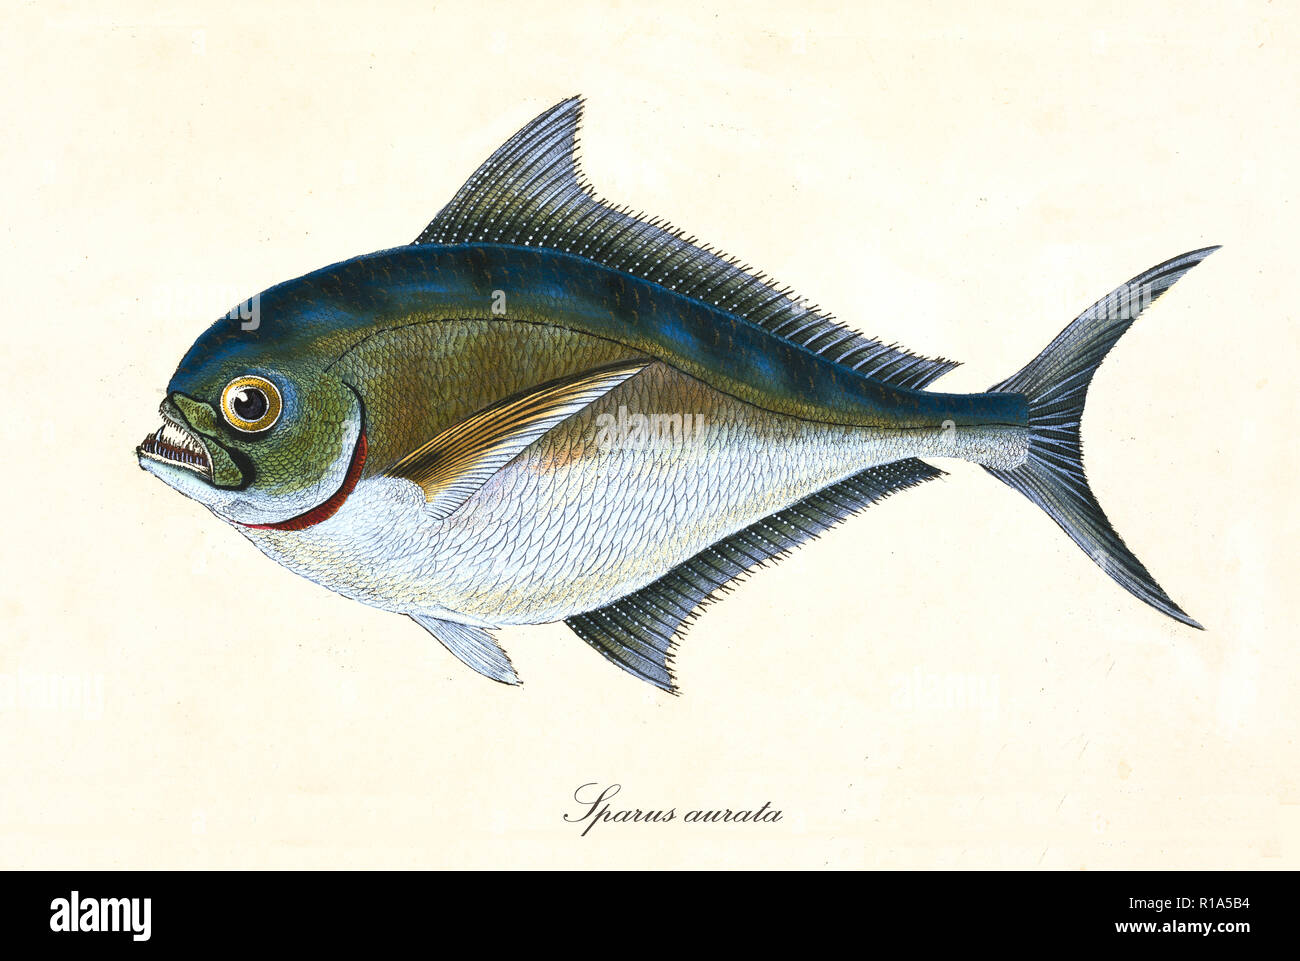 Antica illustrazione colorata di Gilt-Head Orate (Sparus aurata), vista laterale del pesce con la sua spinosa pinne dorsali, elemento isolato su sfondo bianco. Da Edward Donovan. Londra 1802 Foto Stock